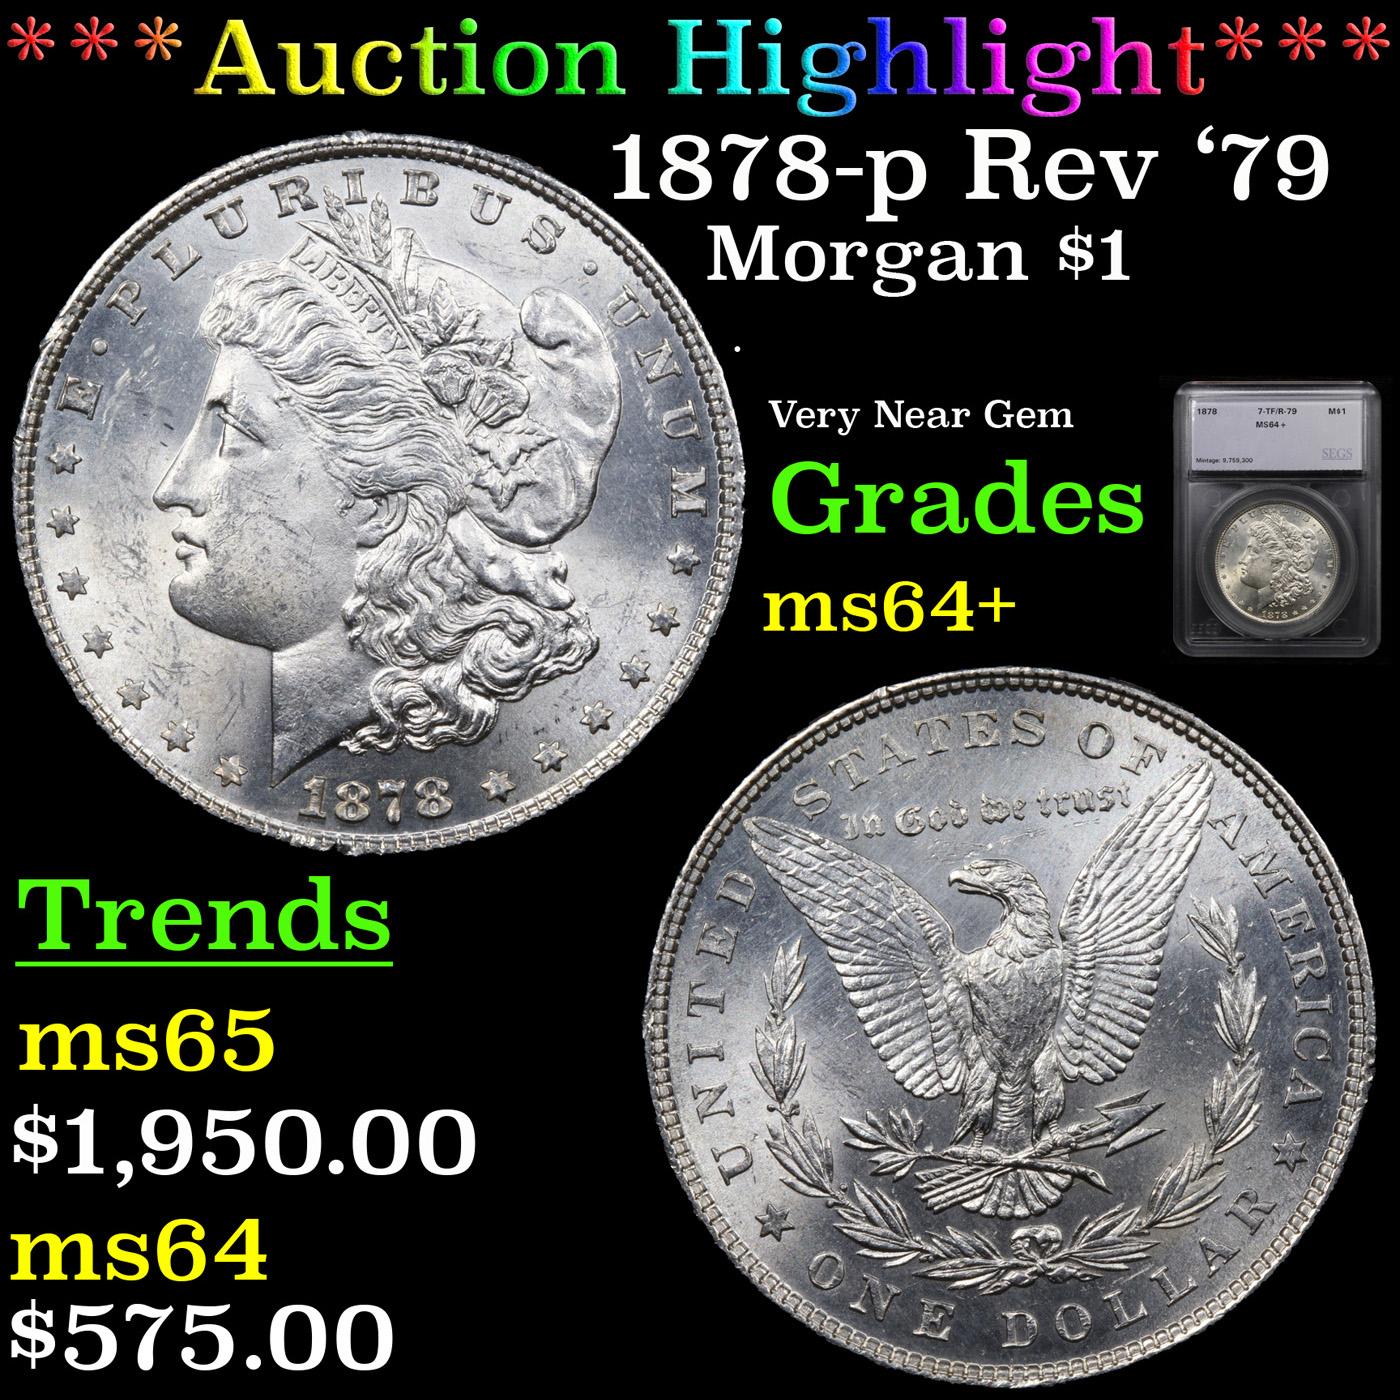 ***Auction Highlight*** 1878-p Rev '79 Morgan Dollar $1 Graded ms64+ By SEGS (fc)